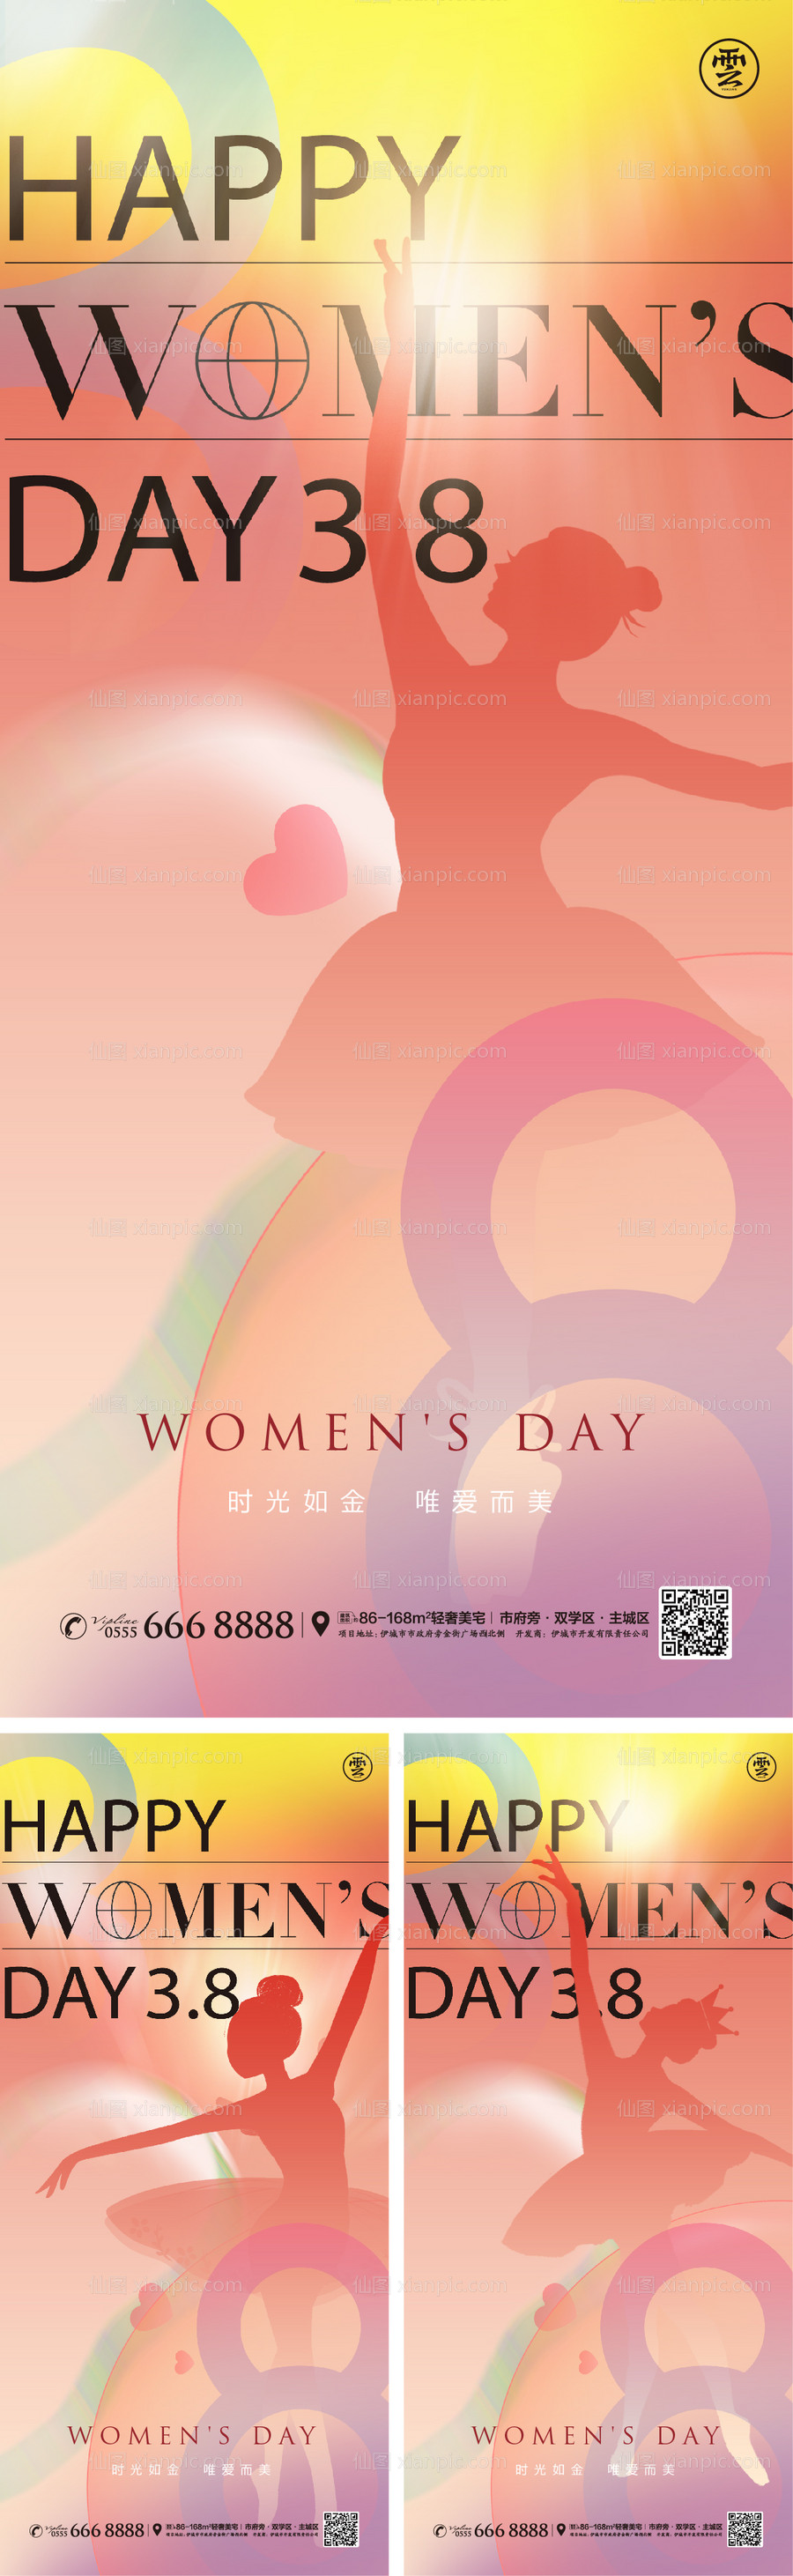 素材乐-妇女节女神节海报